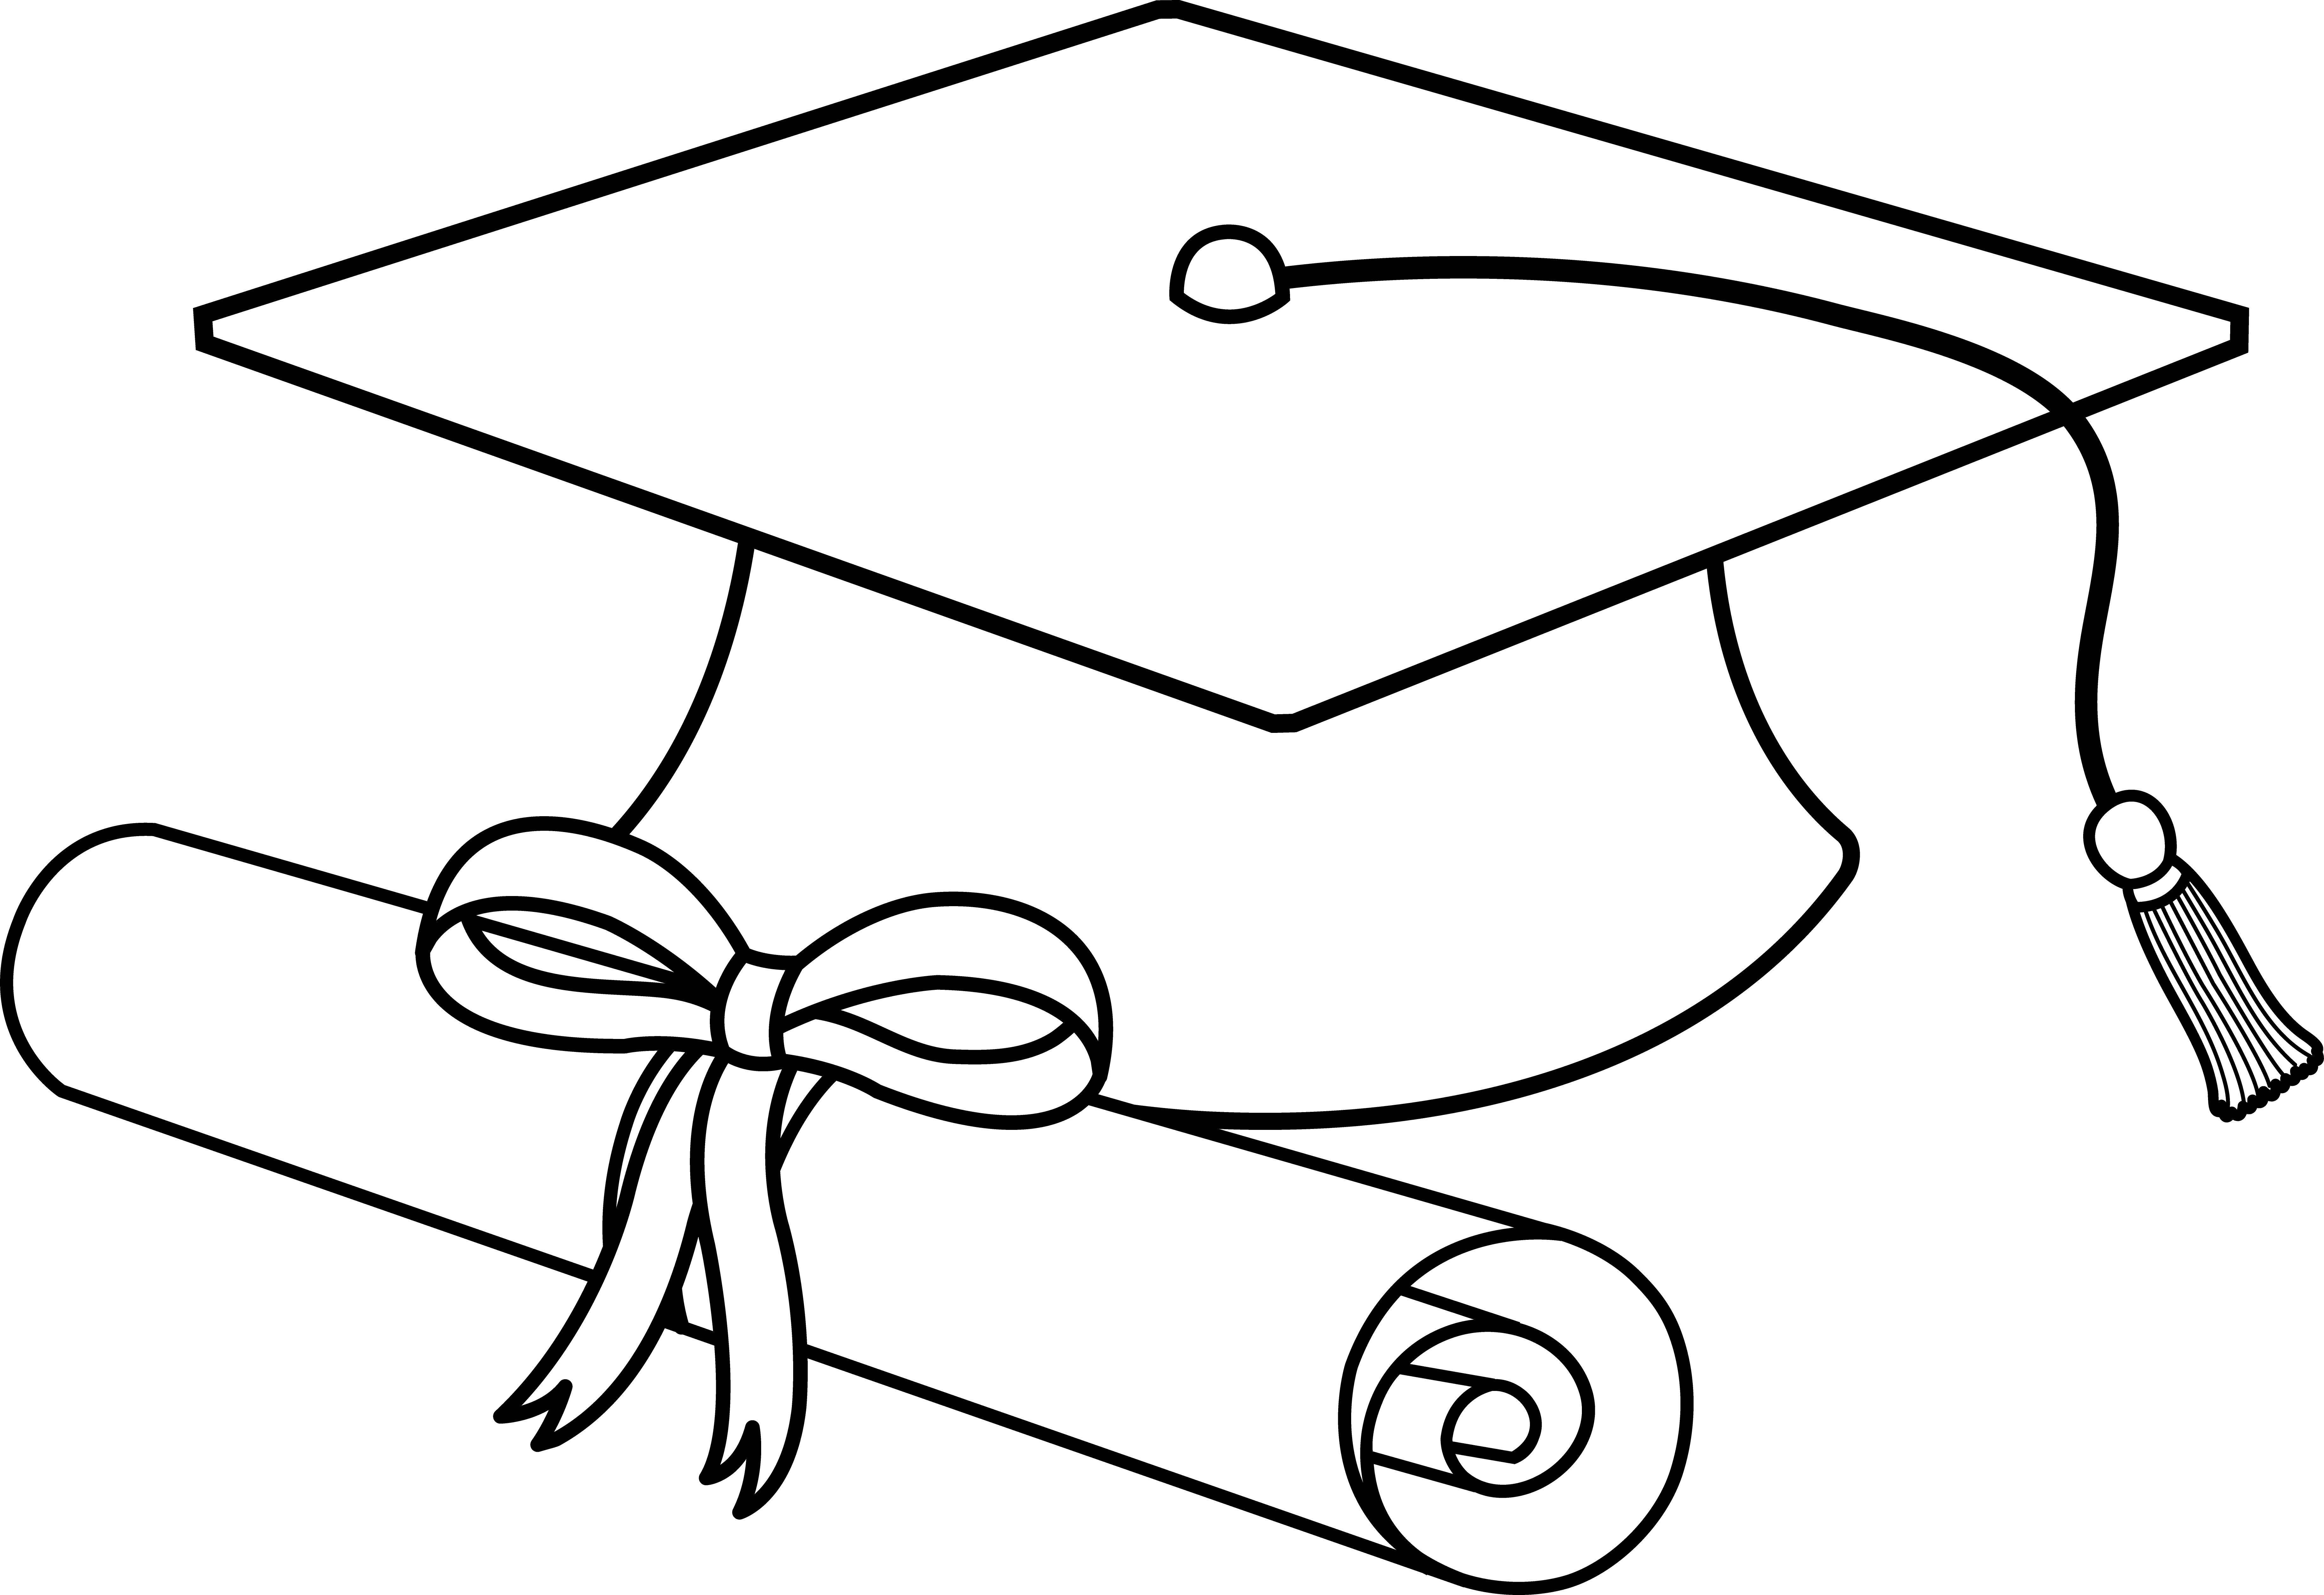 Cap and diploma clipart ... - Cap And Diploma Clipart